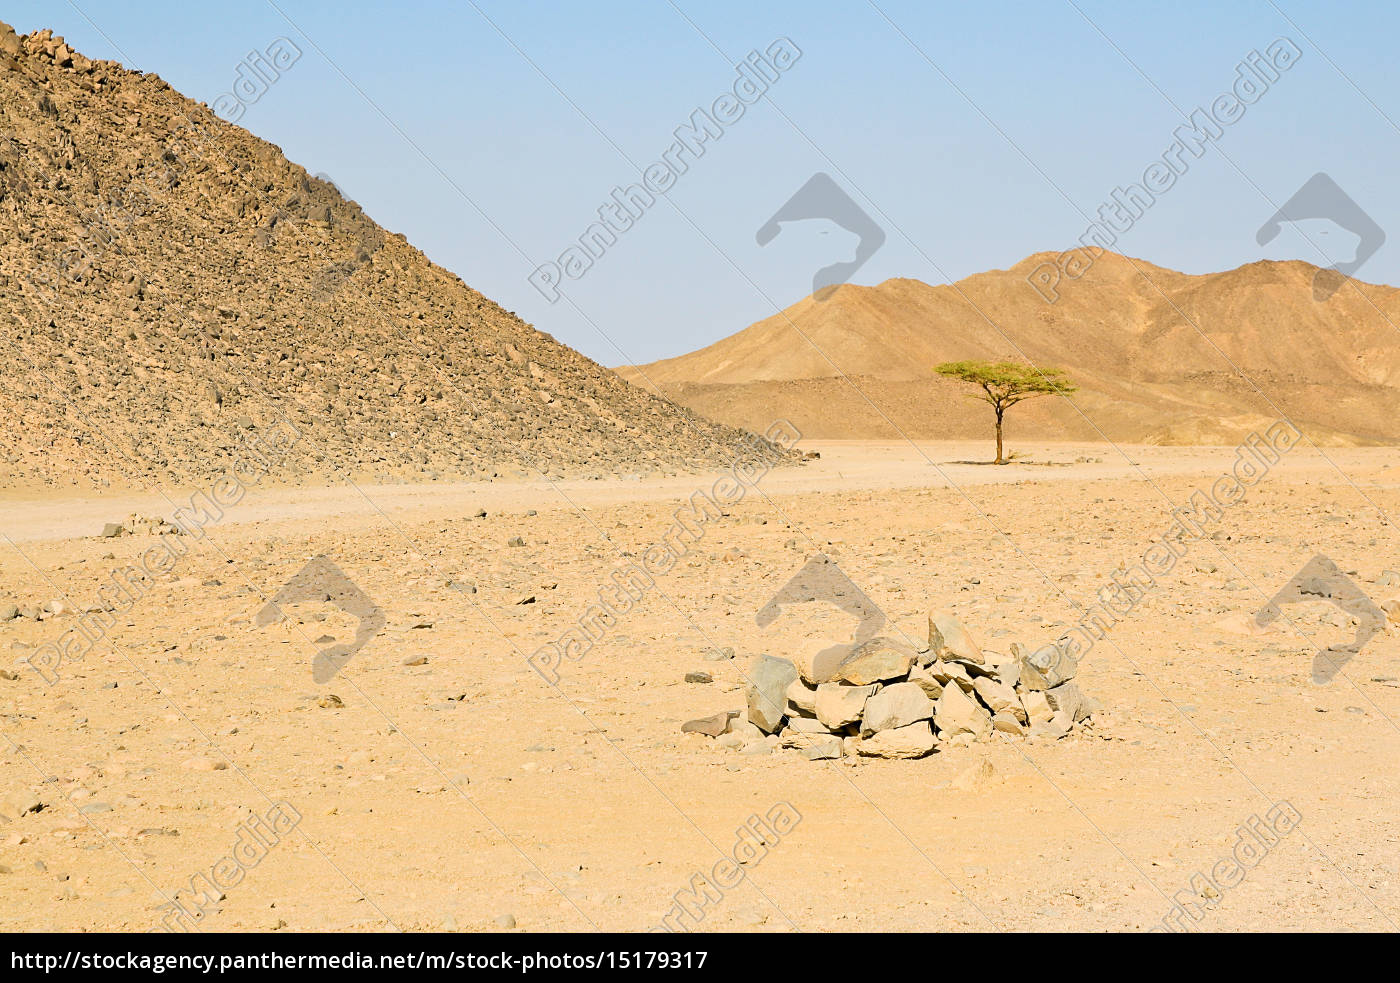 solitario en el desierto - Foto de #15179317 | Agencia de stock PantherMedia